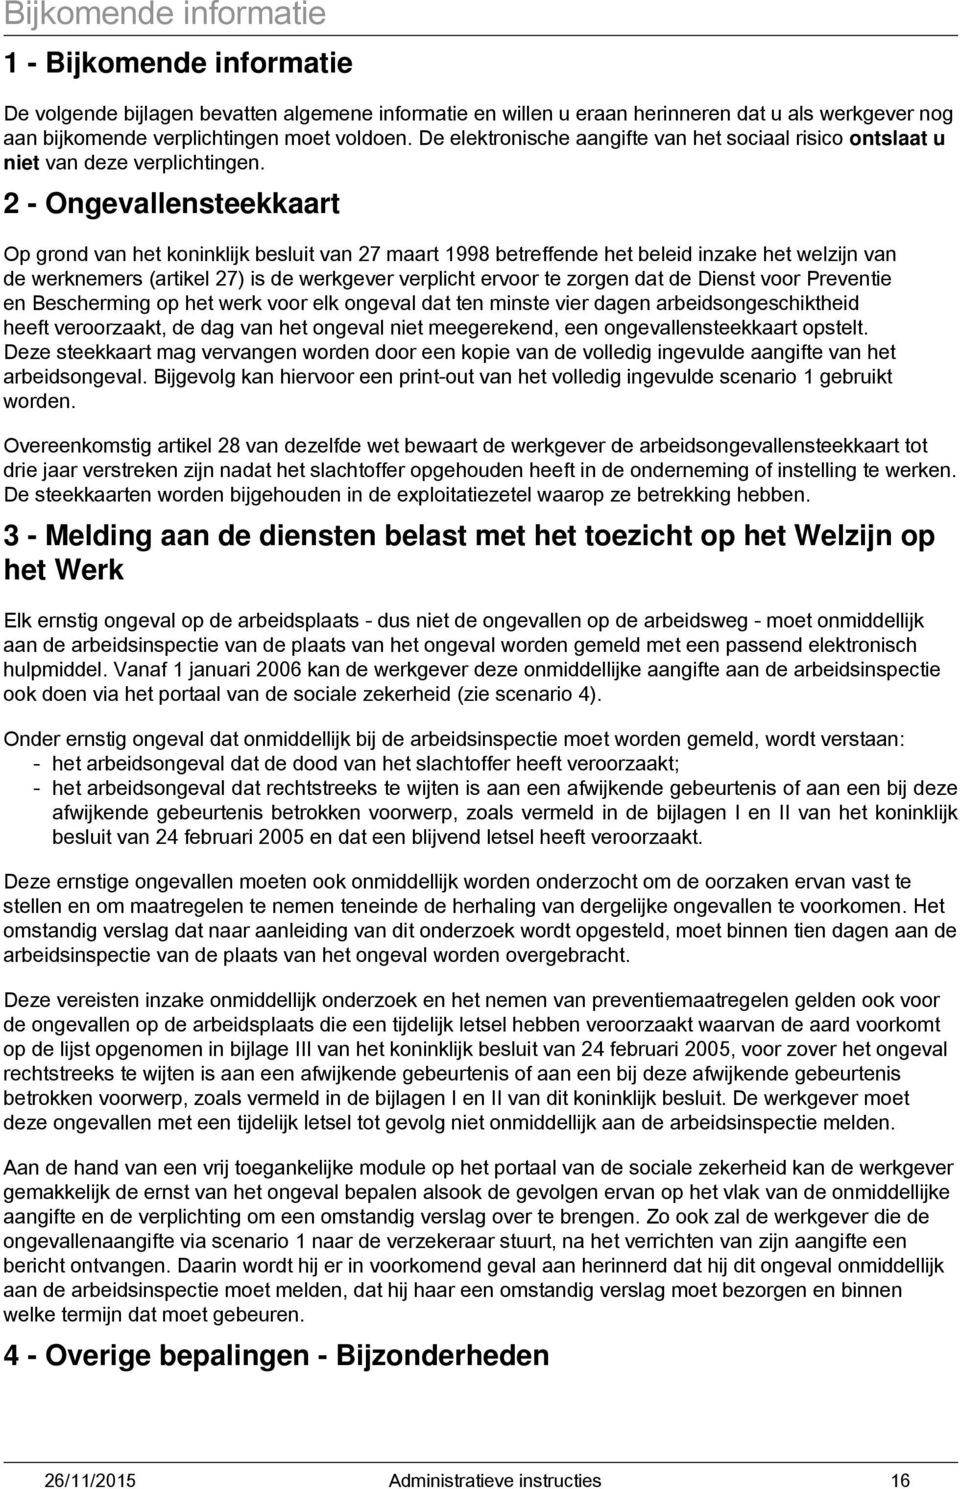 2 - Ongevallensteekkaart Op grond van het koninklijk besluit van 27 maart 1998 betreffende het beleid inzake het welzijn van de werknemers (artikel 27) is de werkgever verplicht ervoor te zorgen dat